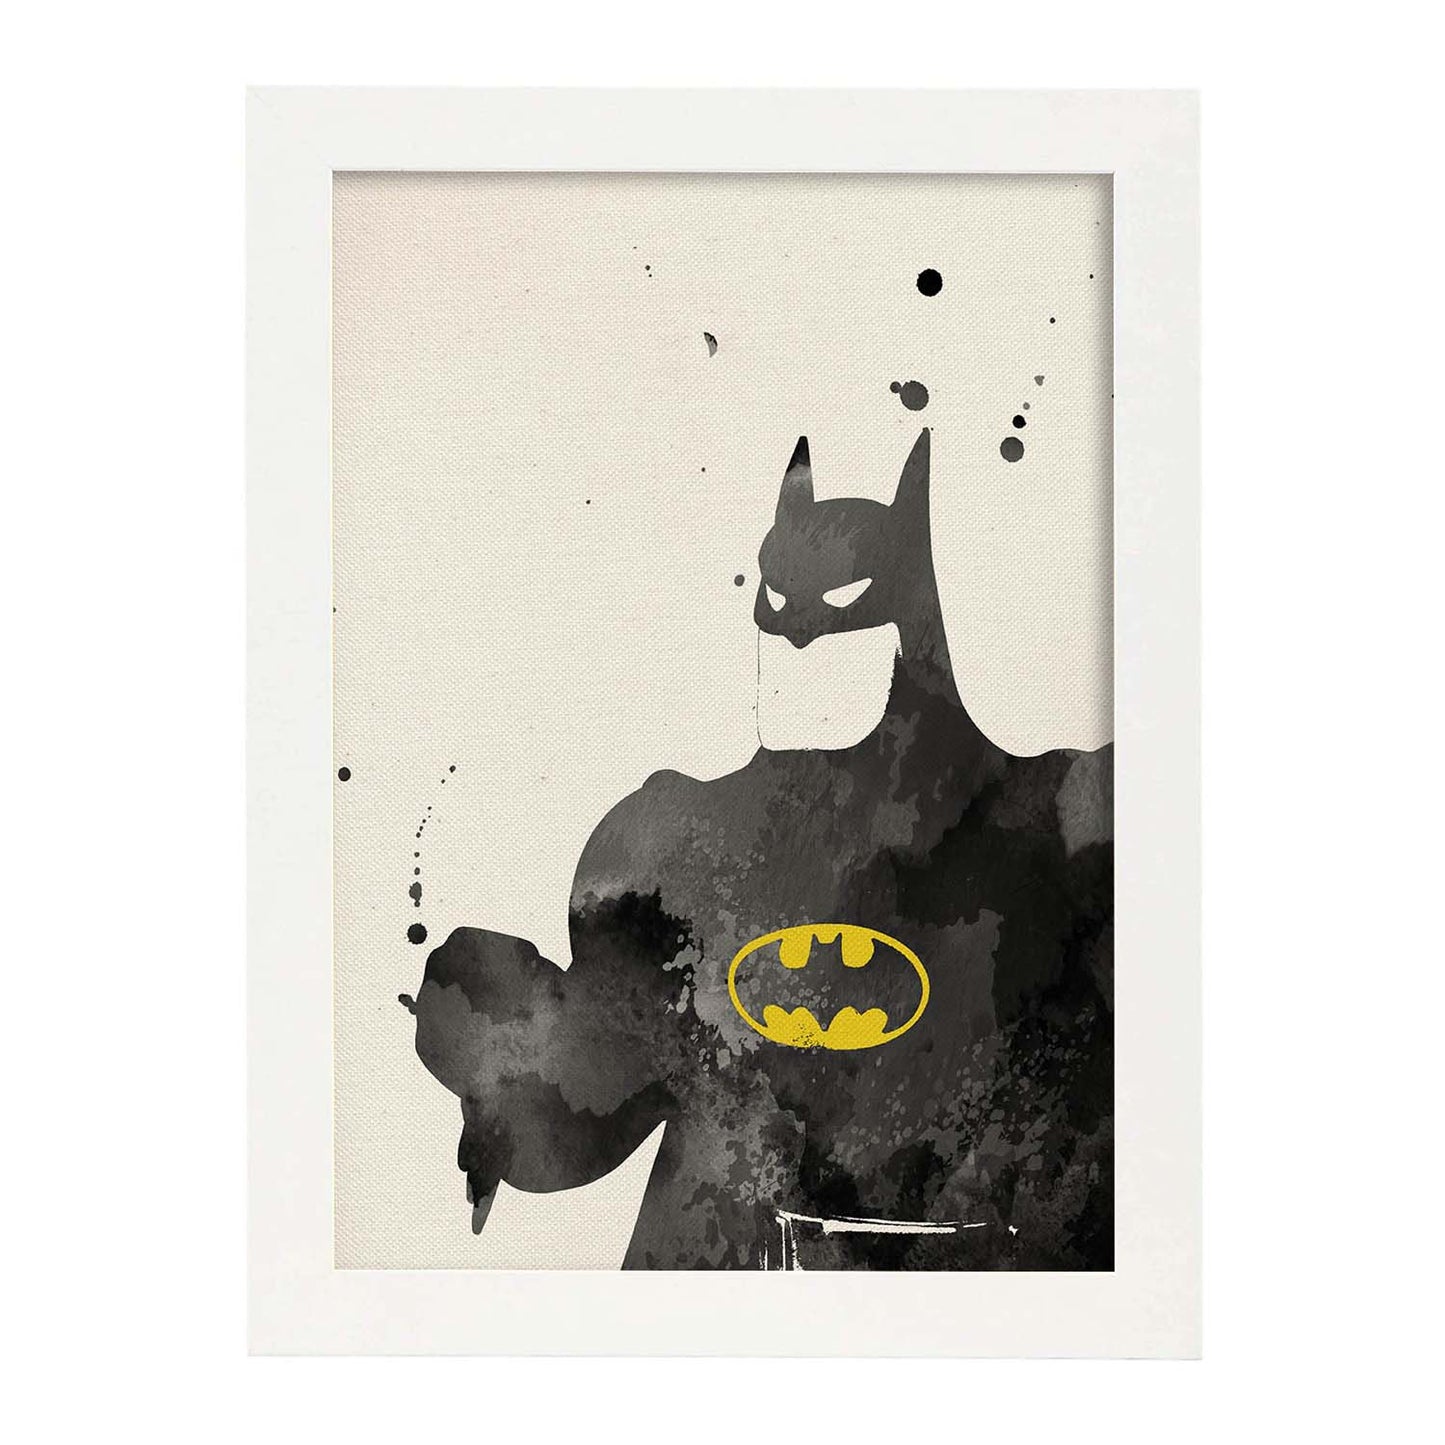 Poster de Batman 2. Láminas de cine, películas, y actores. Posters de películas antiguas con estilo acuarela.-Artwork-Nacnic-A3-Marco Blanco-Nacnic Estudio SL